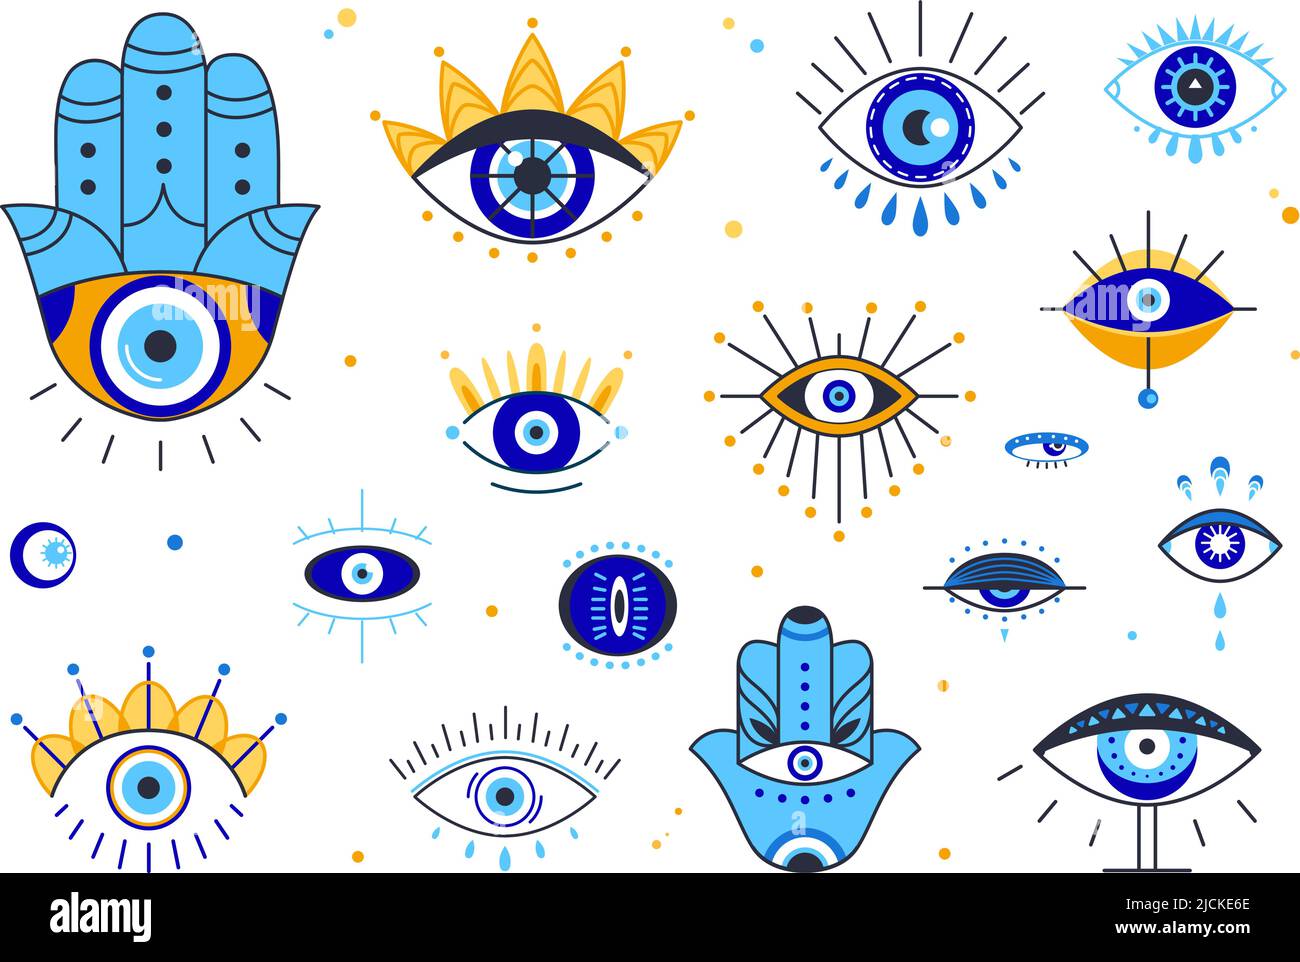 Doodle occhi occulti. Linea esoterica tribale occhio, stencil tatuaggio. Simboli etnici di protezione greci o turchi. Elementi magici dell'arte spirituale, mistici Illustrazione Vettoriale